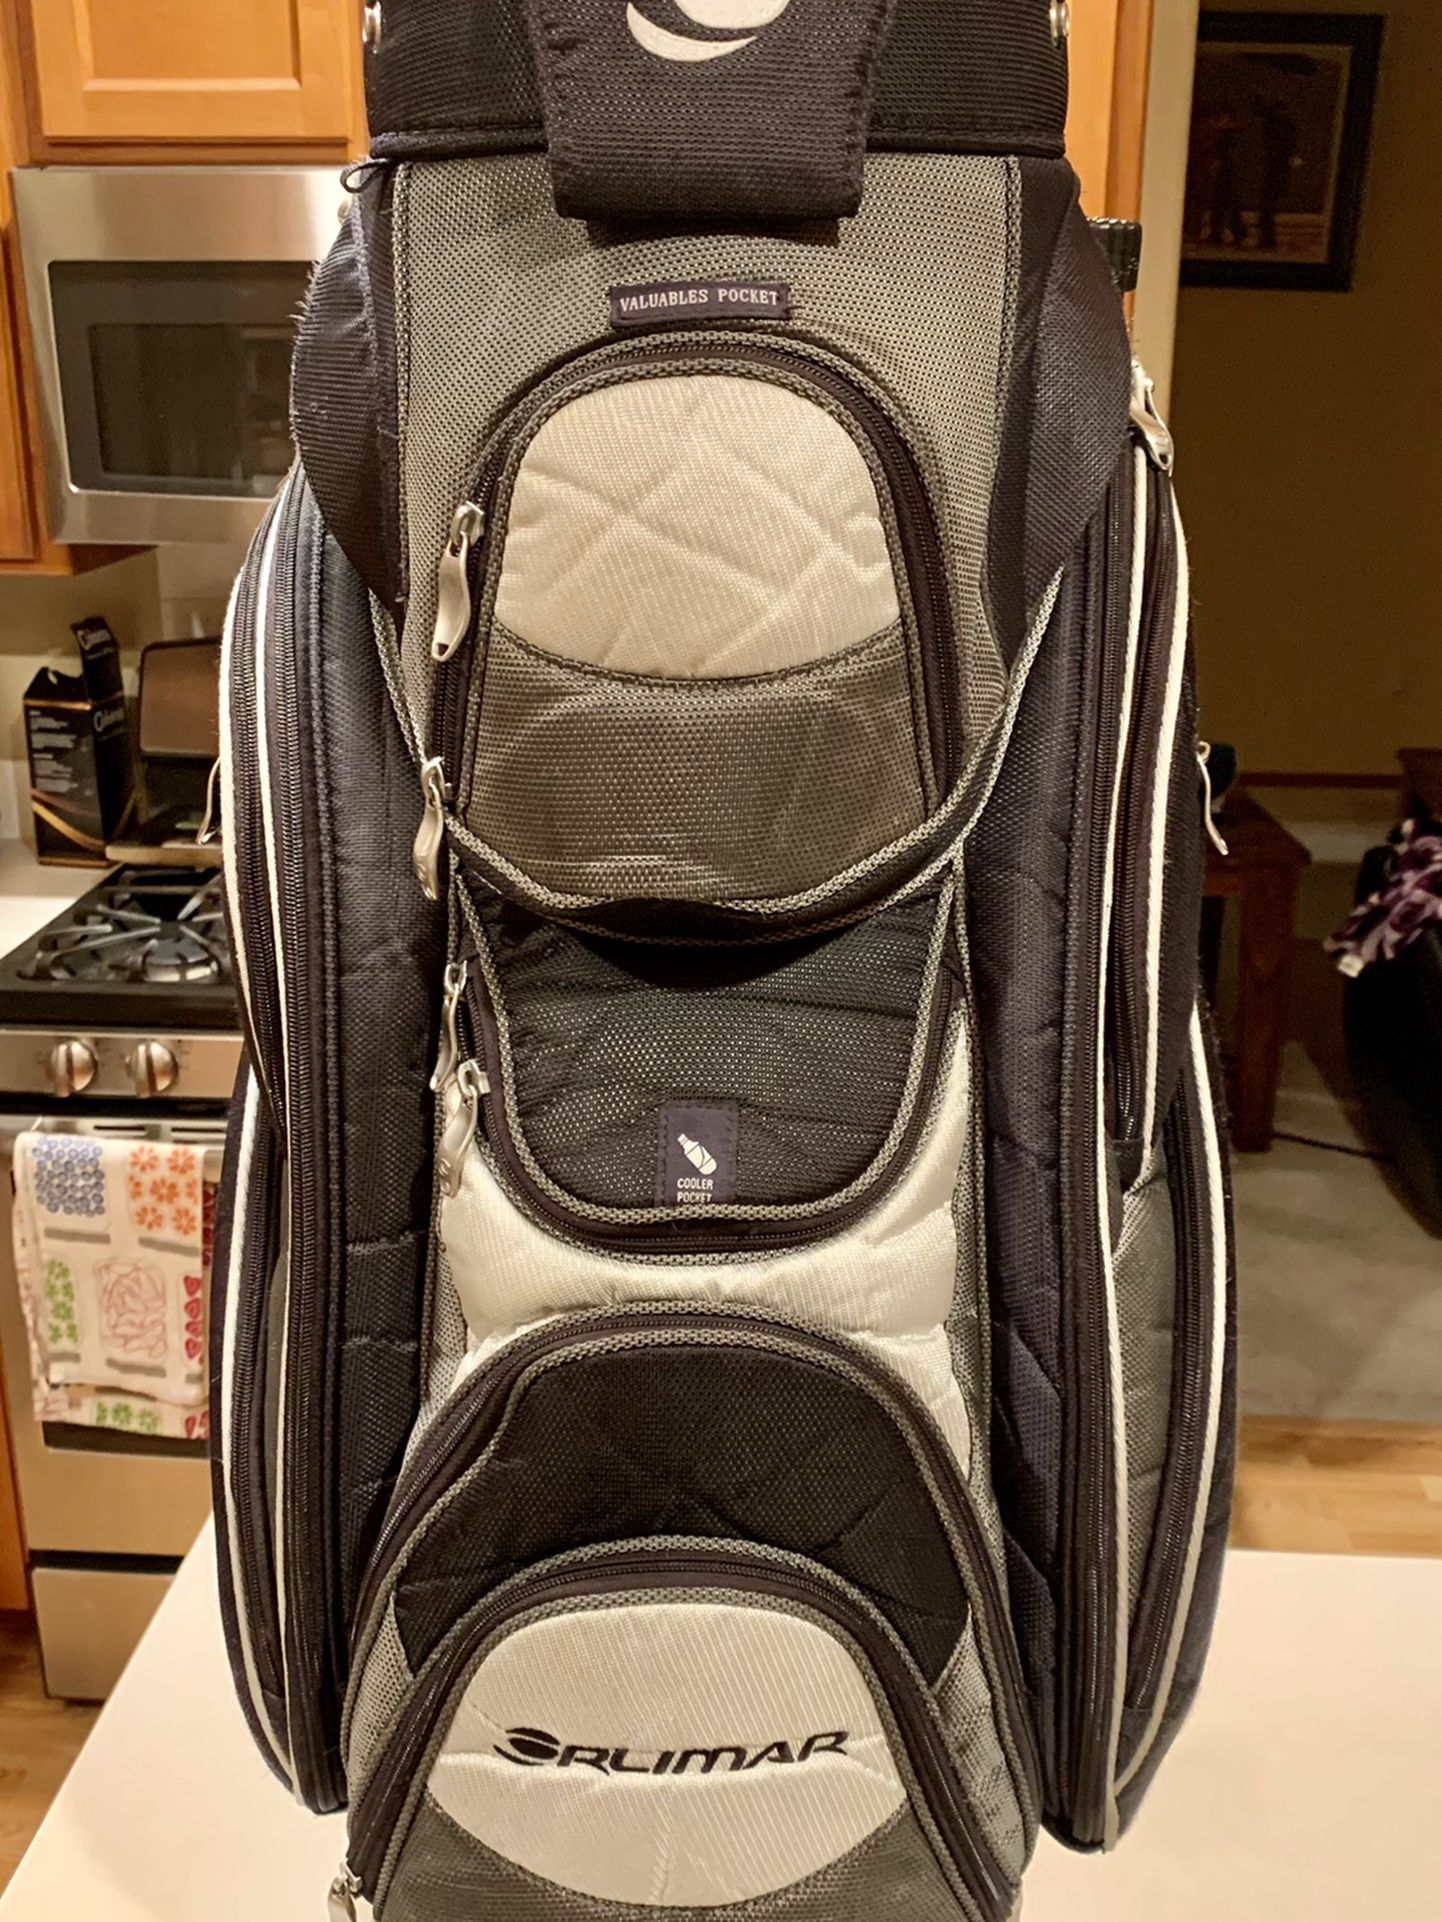 Orlimar Golf Cart Bag